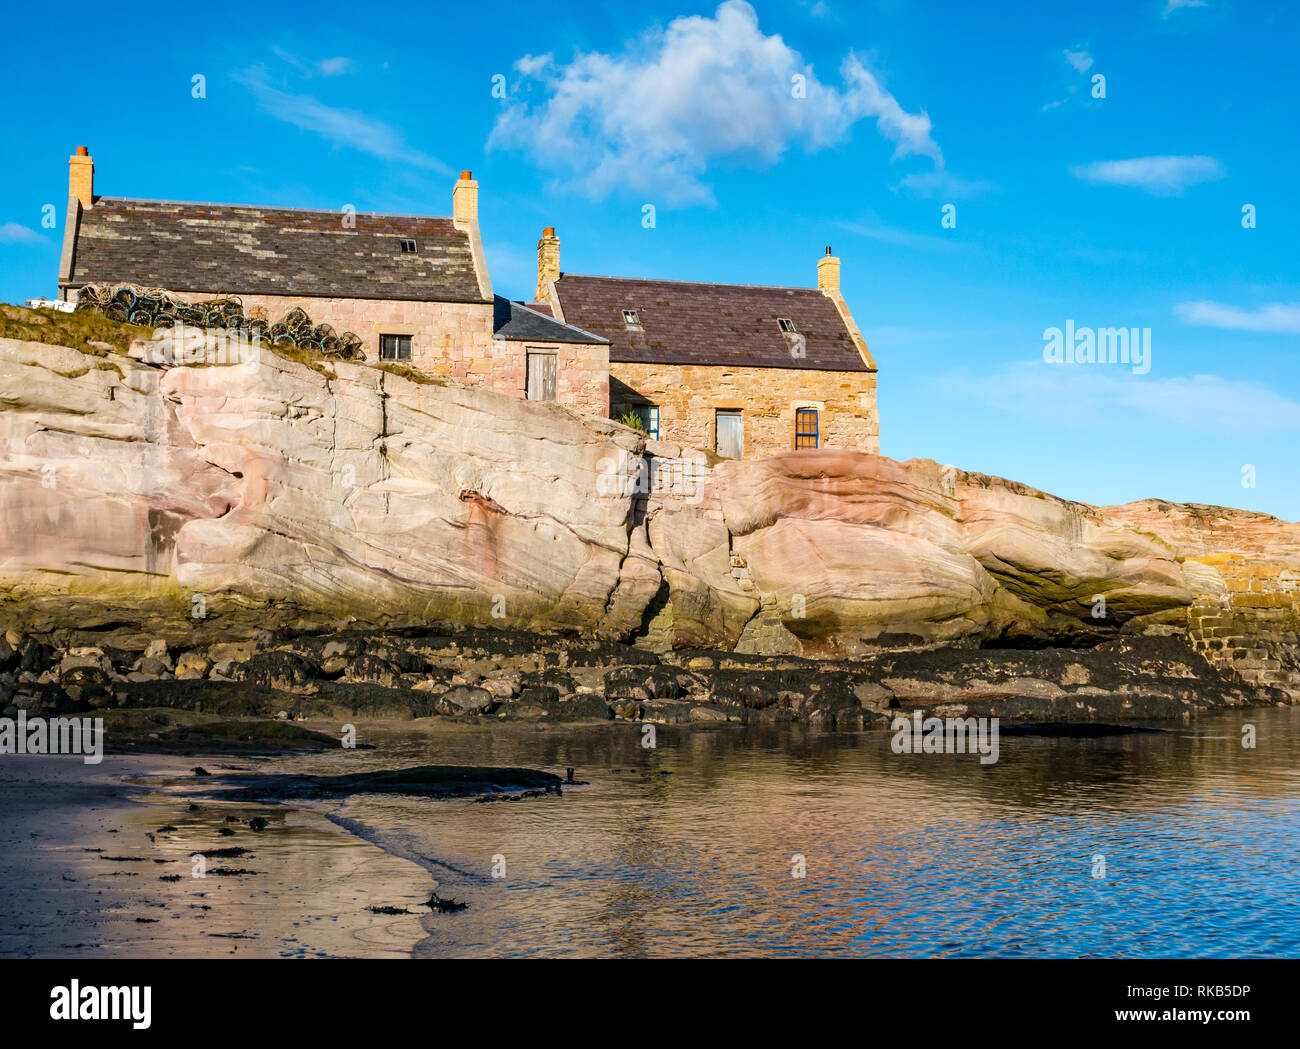 Vieux chalets, Cove Harbour, Berwickshire, Scottish Borders, Scotland, UK Banque D'Images